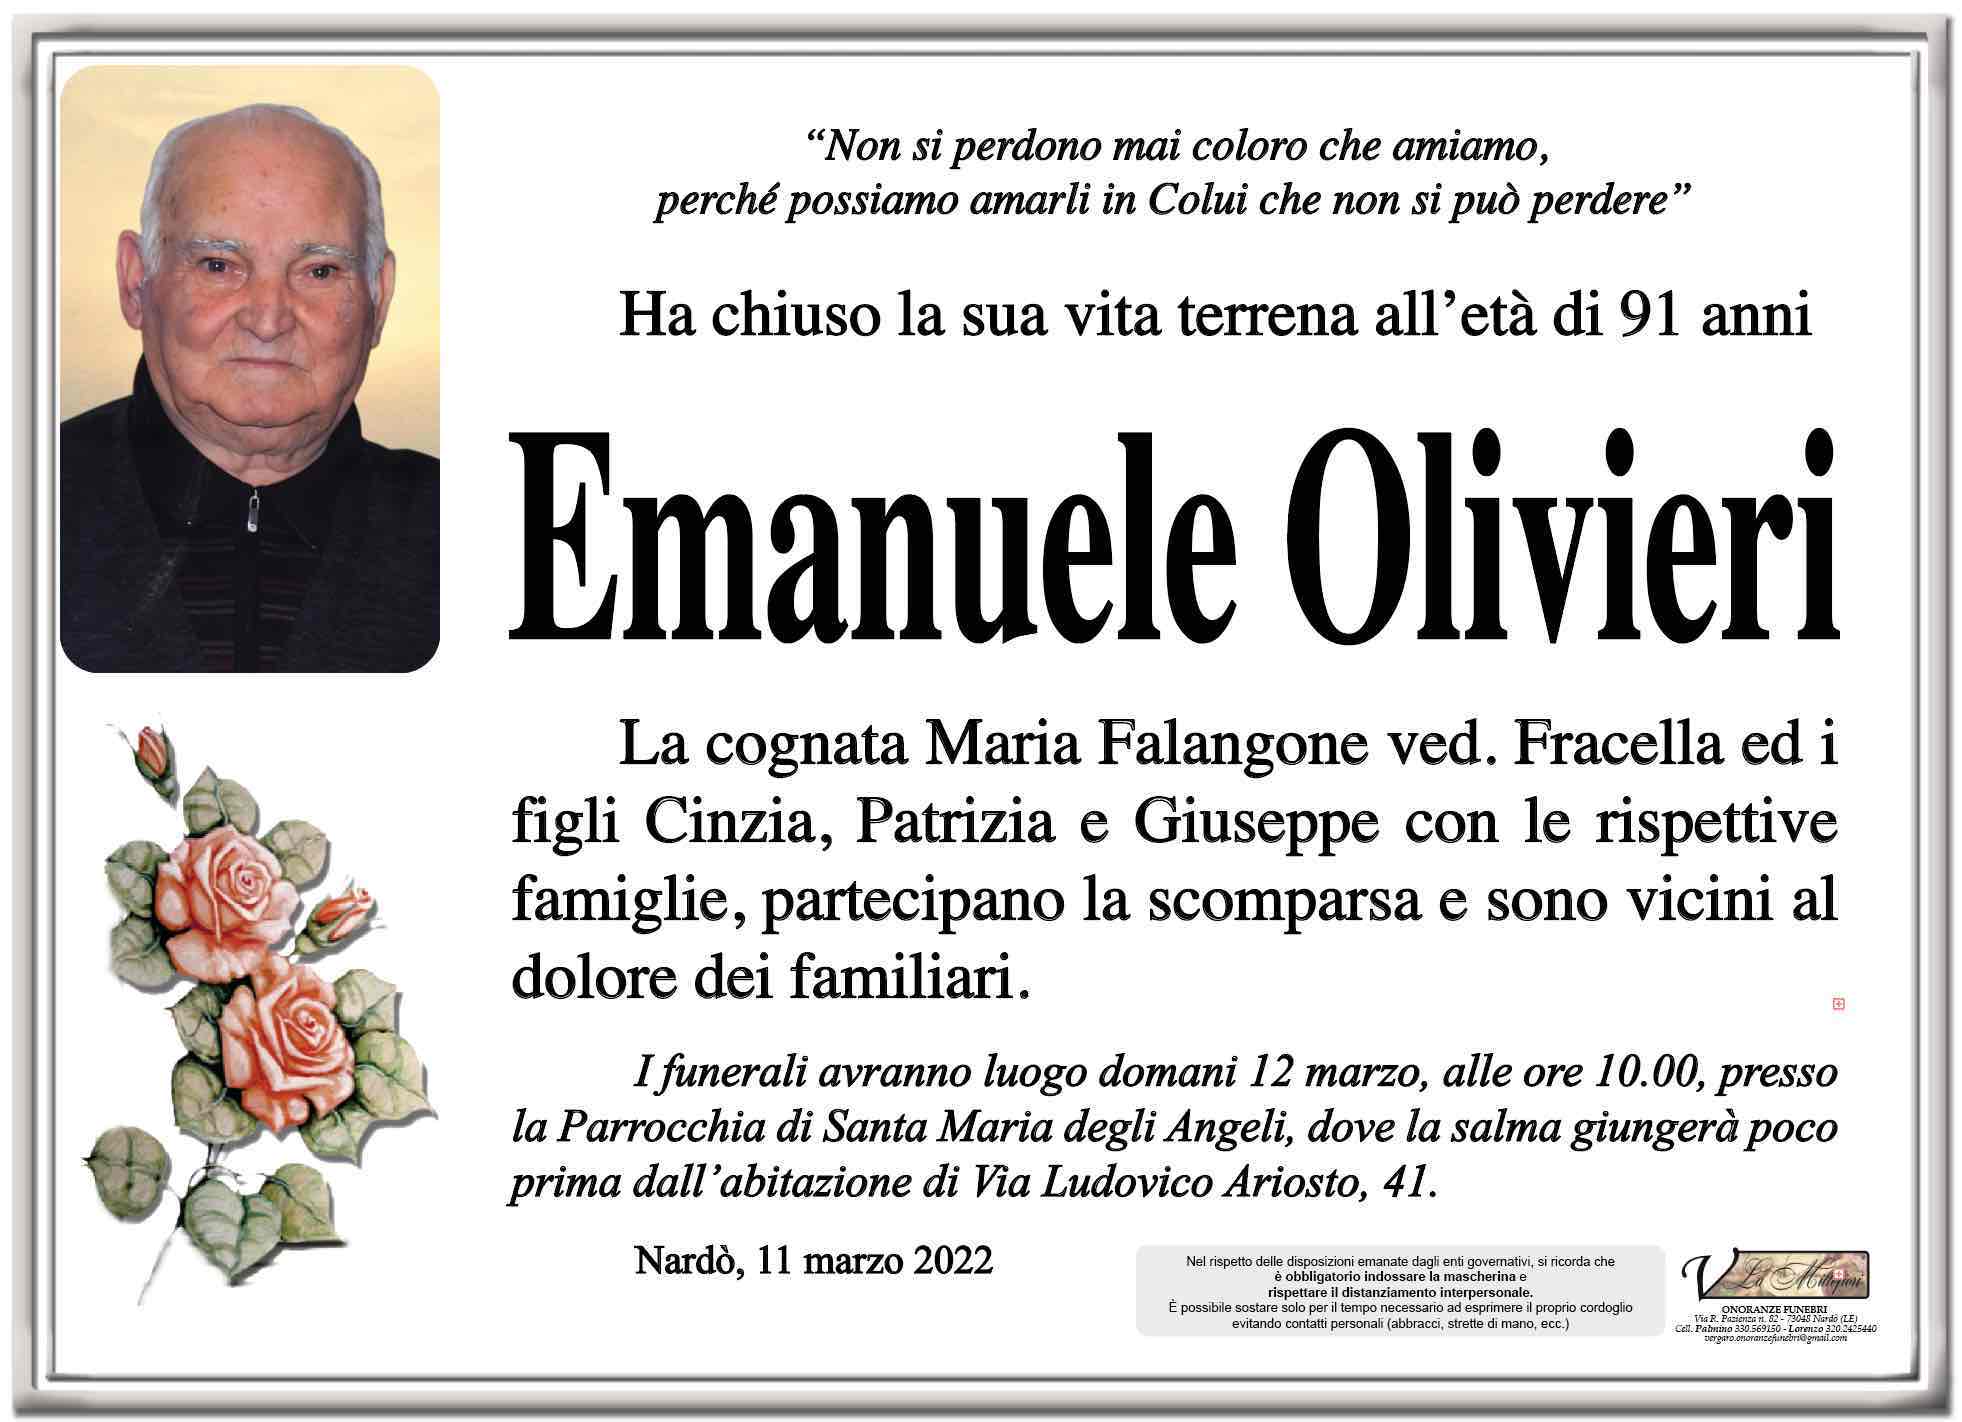 Emanuele Olivieri